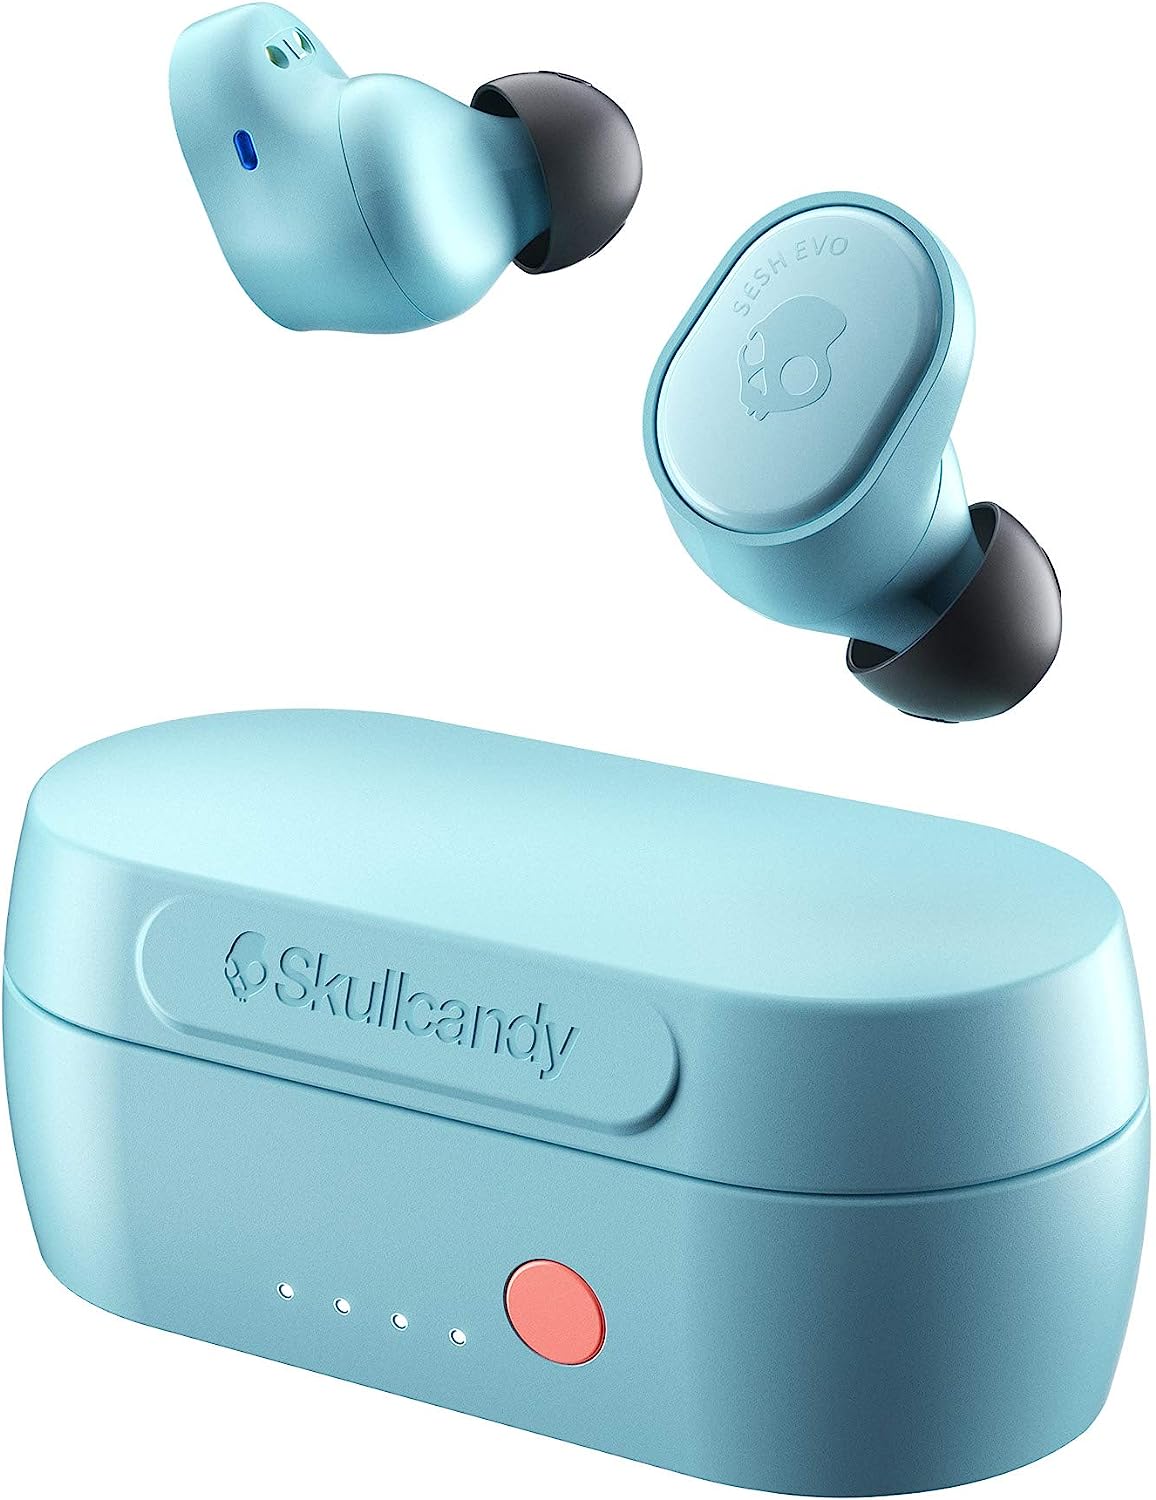 Skullcandy Sesh Evo True Wireless In-Ear Auriculares Bluetooth Compatible con iPhone y Android / Estuche de carga y micrófono / Ideal para gimnasio, deportes y juegos IP55 Resistente al agua - Azul